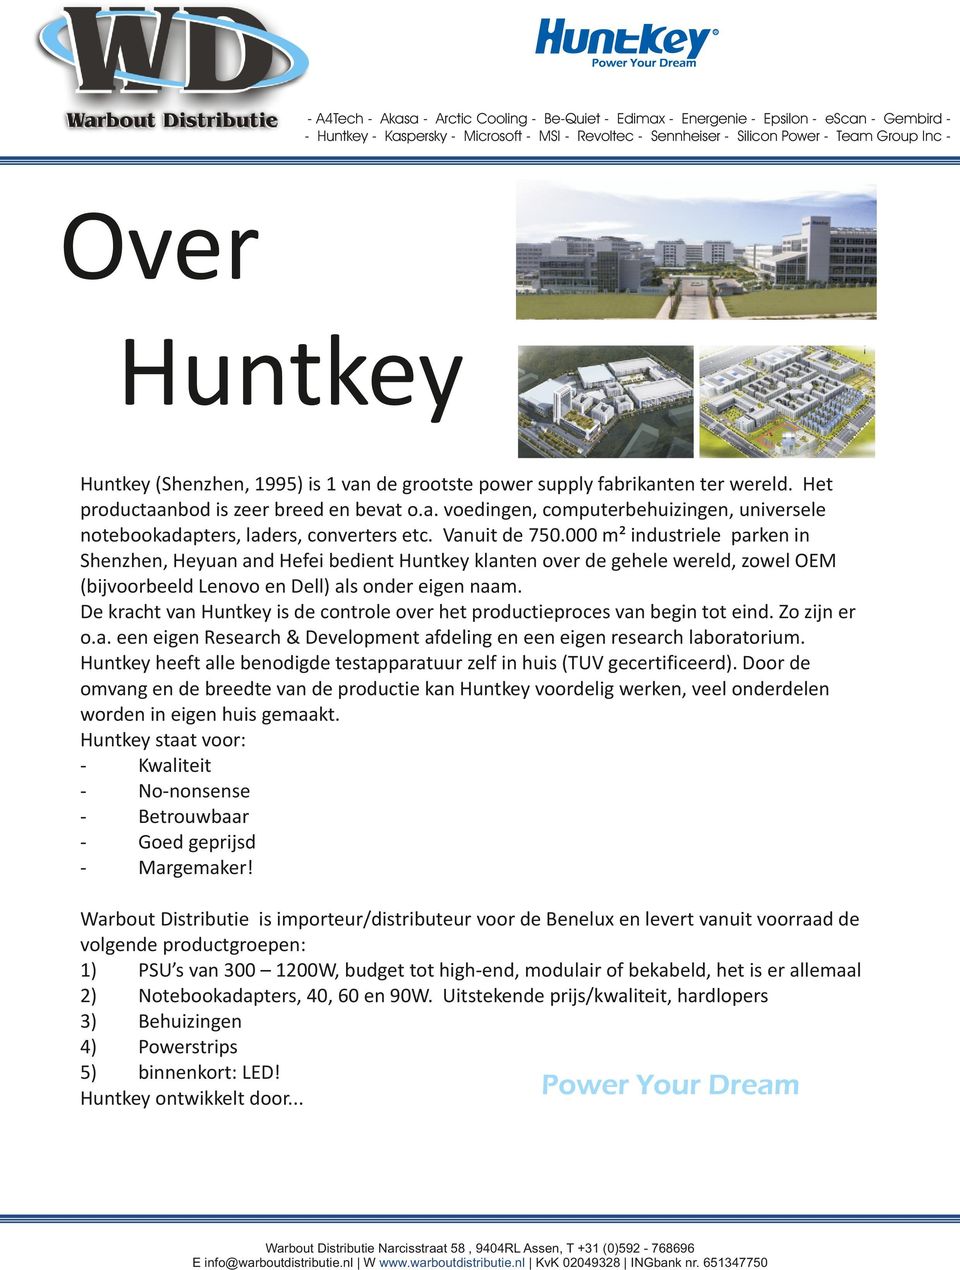 De kracht van Huntkey is de controle over het productieproces van begin tot eind. Zo zijn er o.a. een eigen Research & Development afdeling en een eigen research laboratorium.